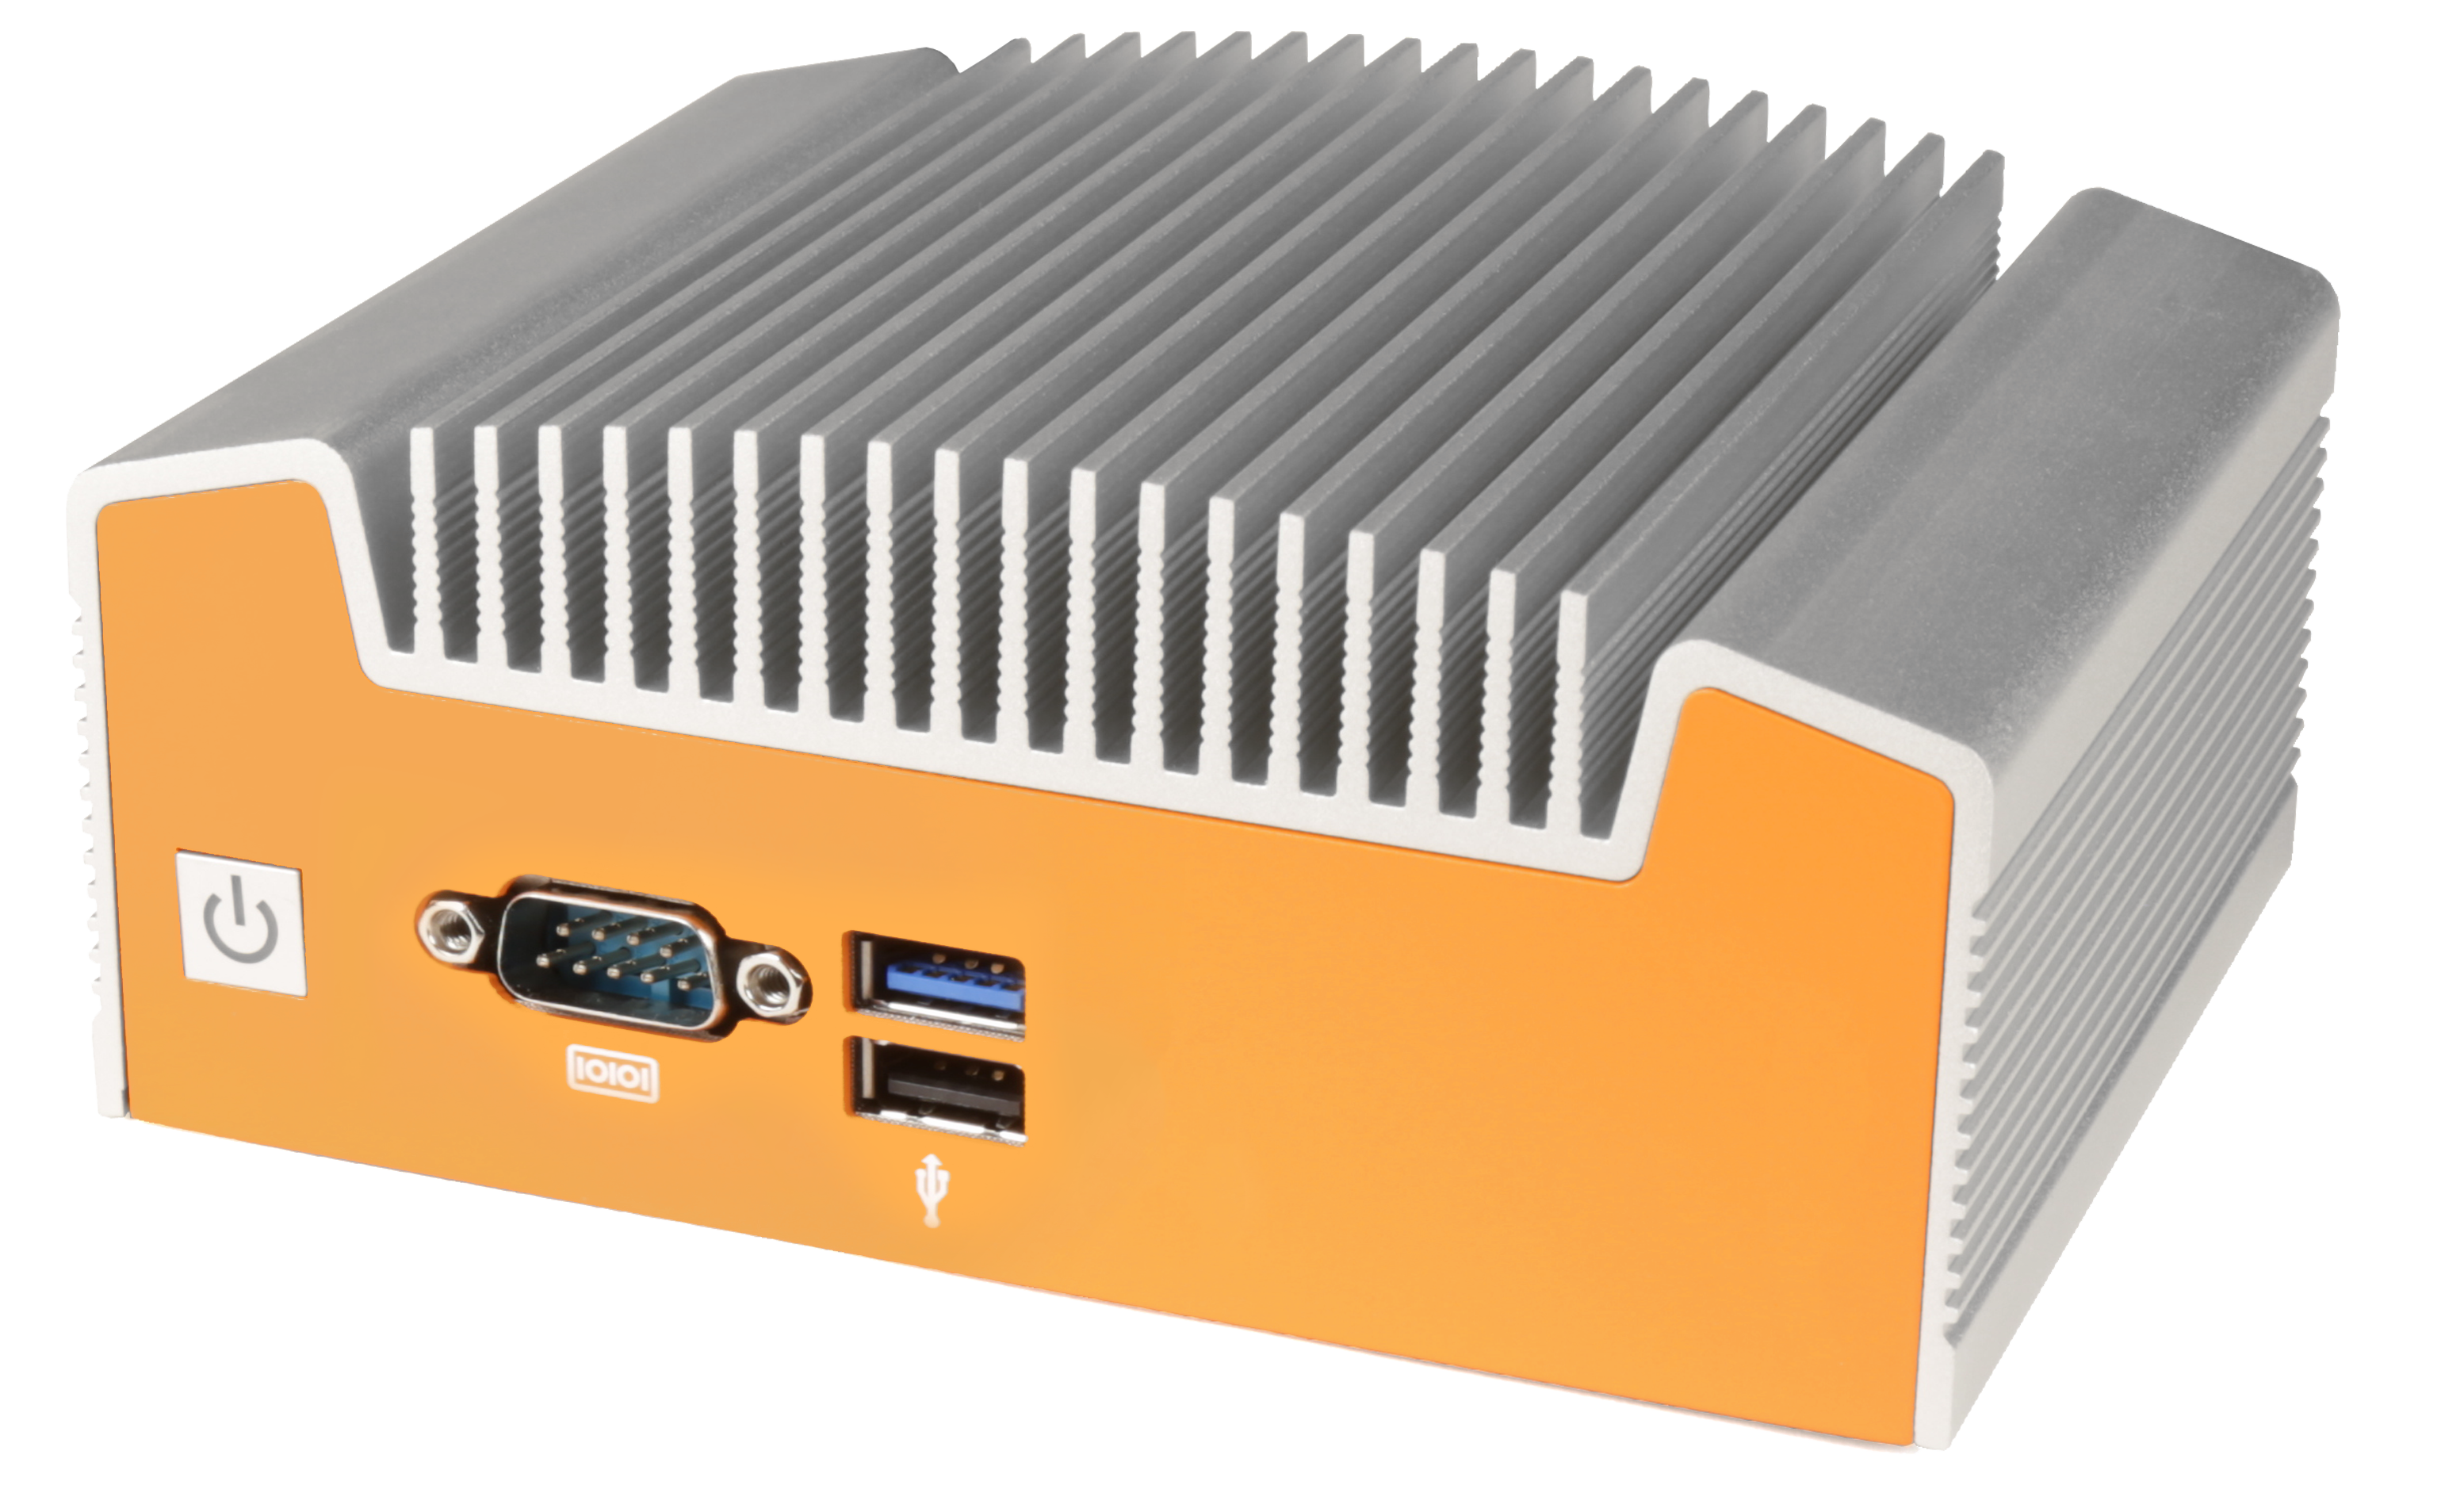 OnLogic ML100 rugged computer met opvallende oranje kleur en vinnen voor fanless koeling